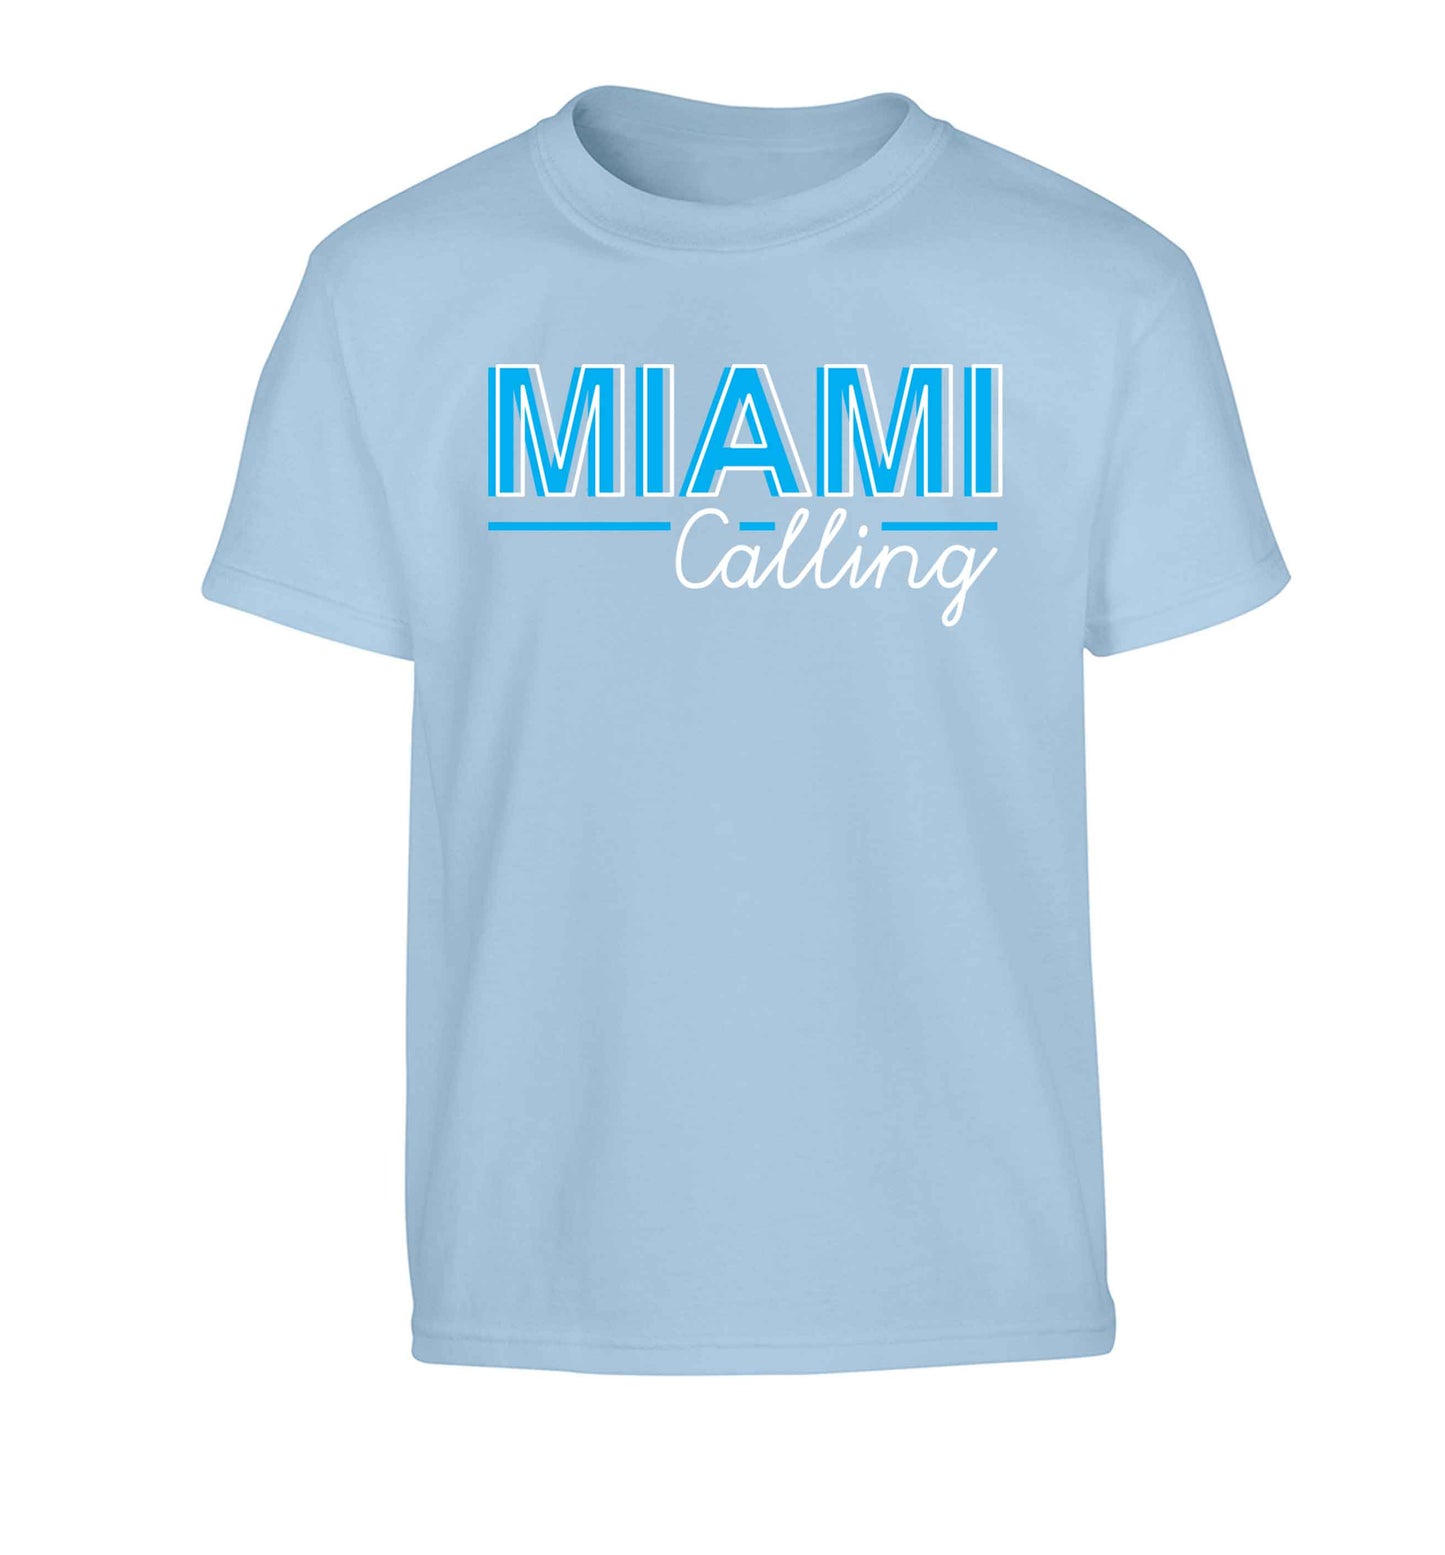 Miami calling Children's light blue Tshirt 12-13 Years